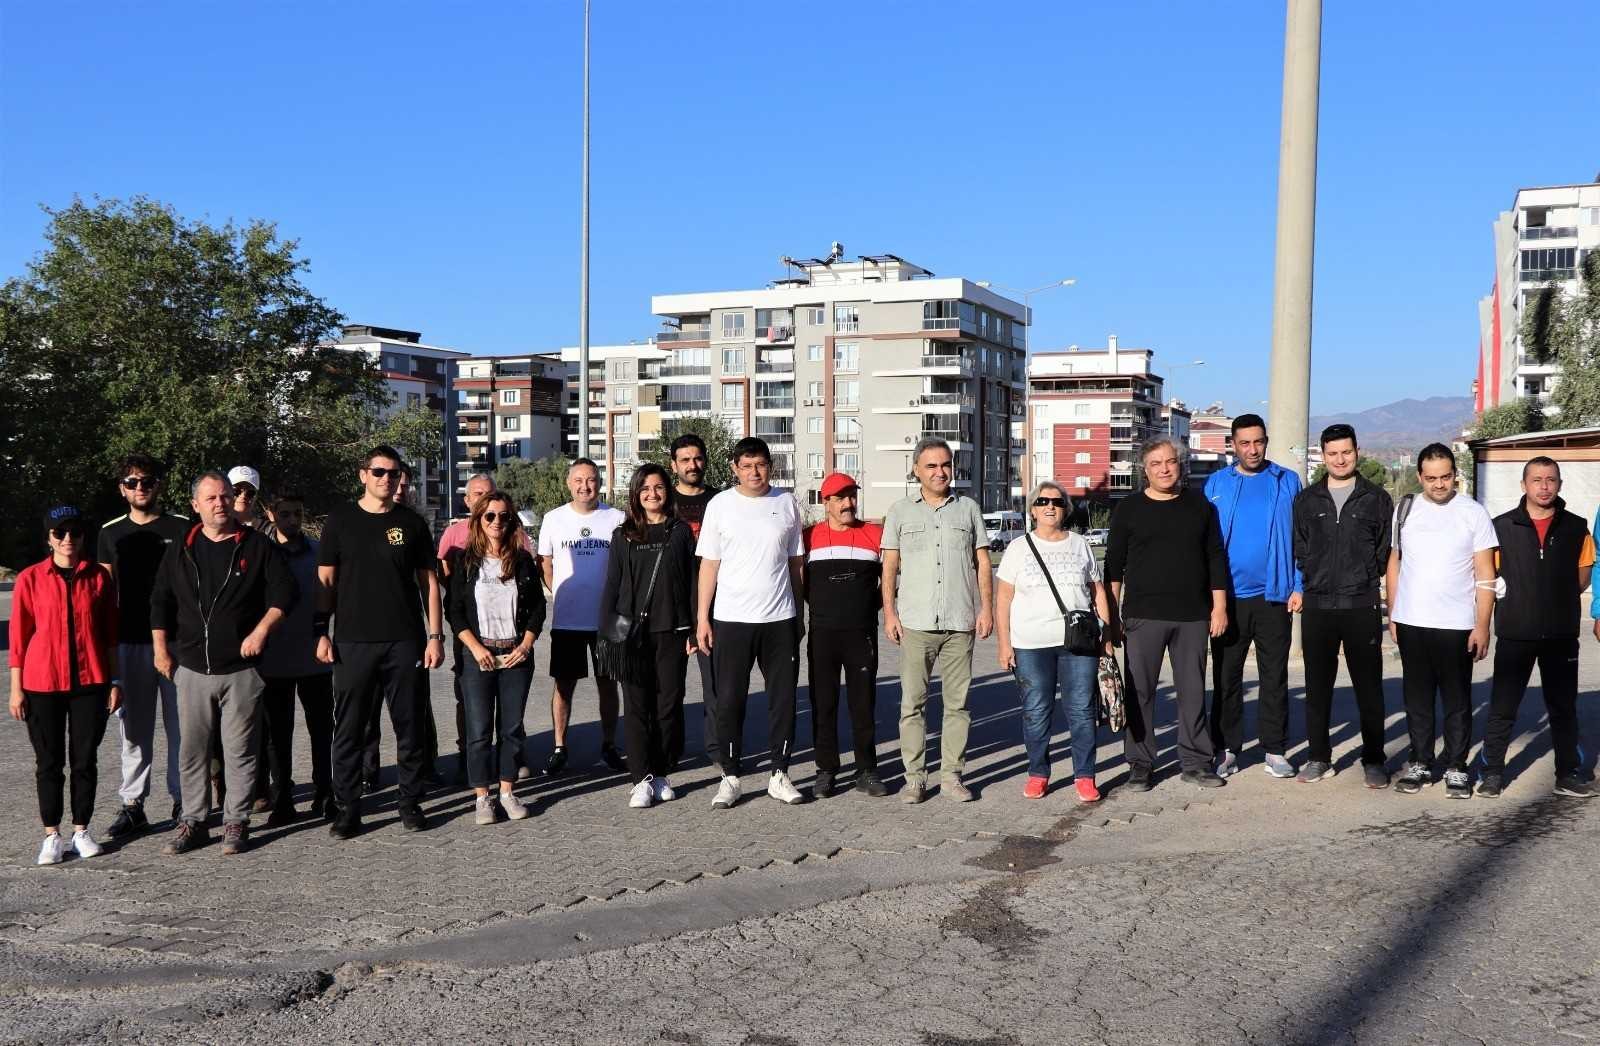 Nazilli’de Avrupa Hareketlilik Haftası kapsamında sağlık için yürüdüler #aydin